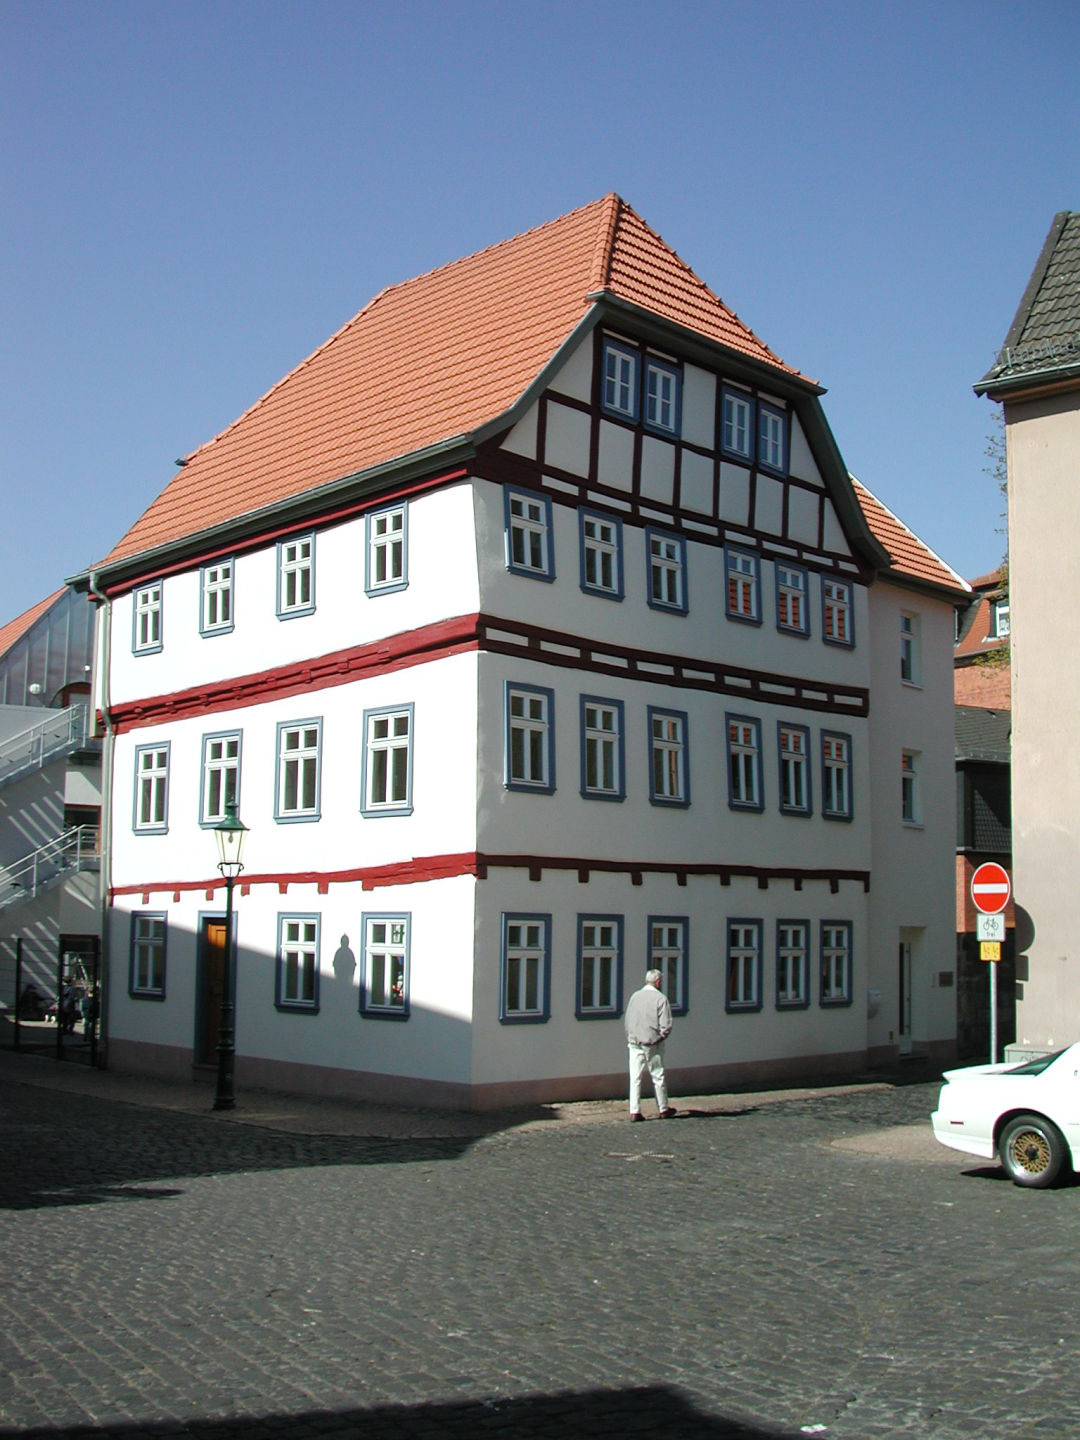 Umbau und Sanierung eines unter Denkmalschutz stehenden Gebäudes "Trabertschen Hauses" in Fulda